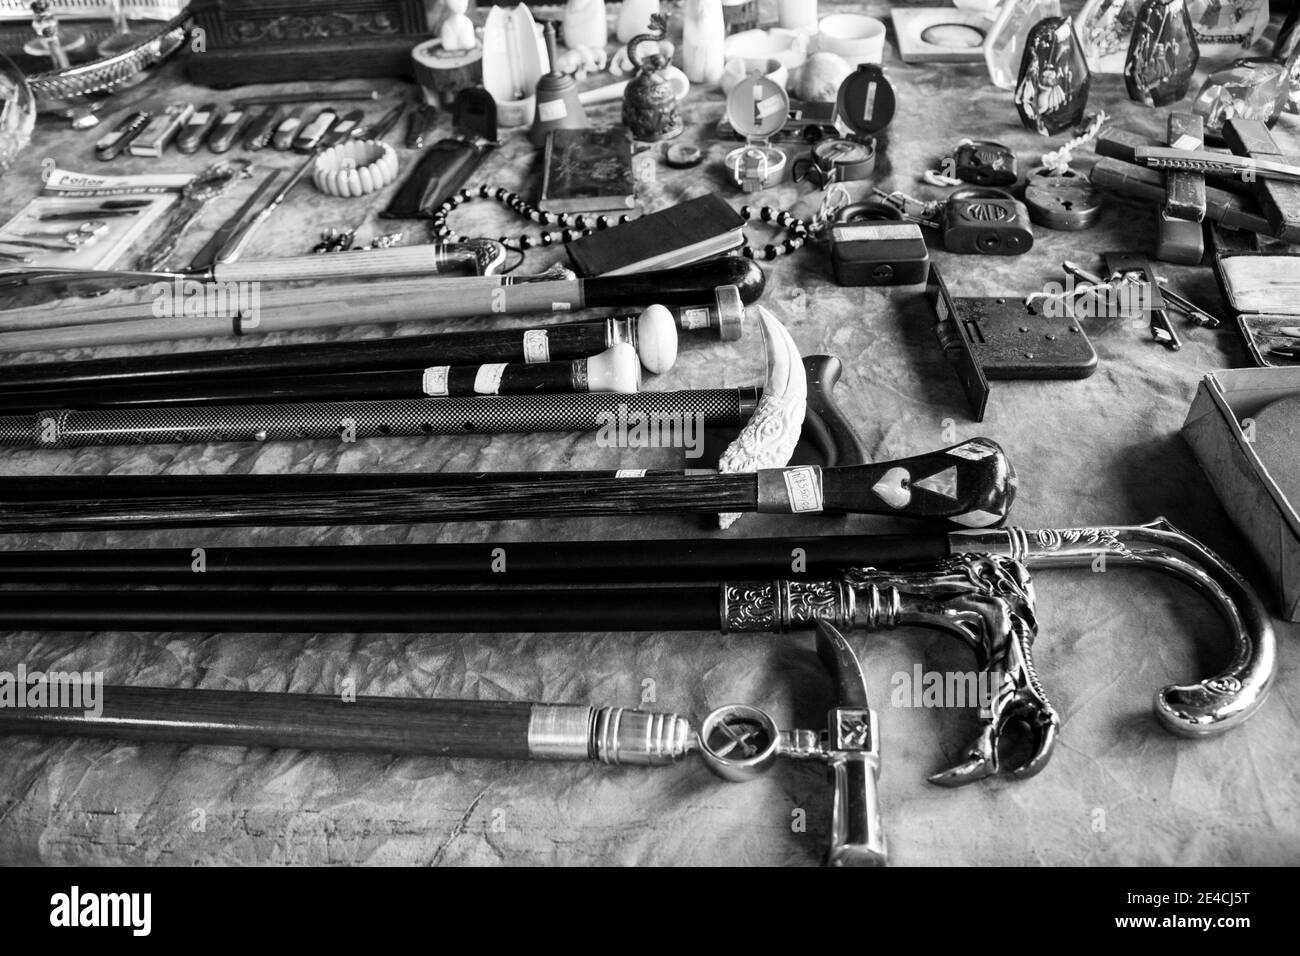 Sao Paulo / SP / Brasilien - 01 03 18: Verschiedene Objekte auf einem Flohmarkt zu sehen, darunter: Stöcke, Vorhängeschlösser, Messer, Schlüssel Stockfoto